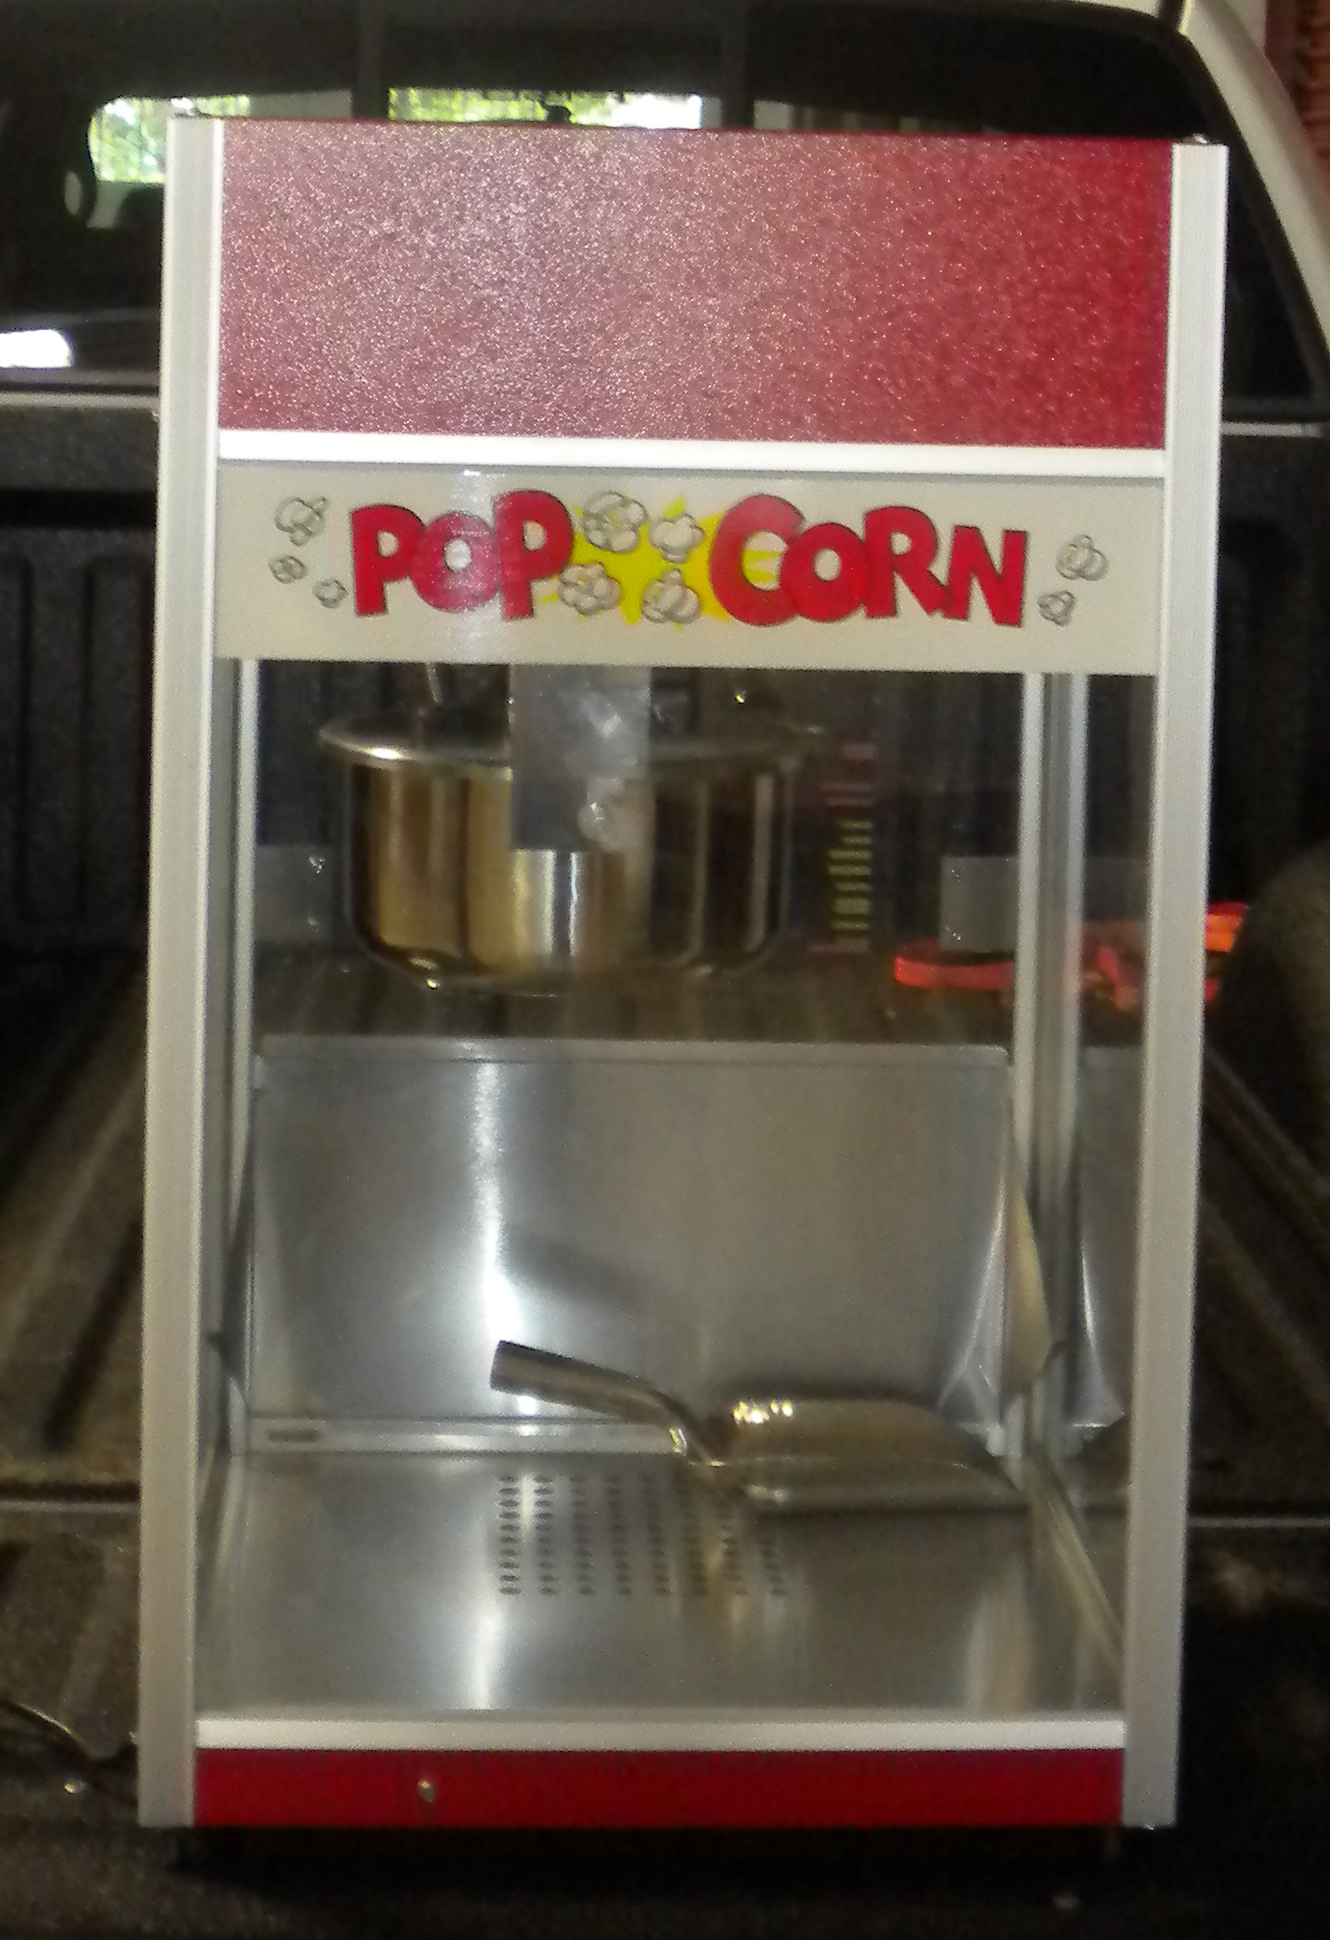 Popcorn Machine Front View